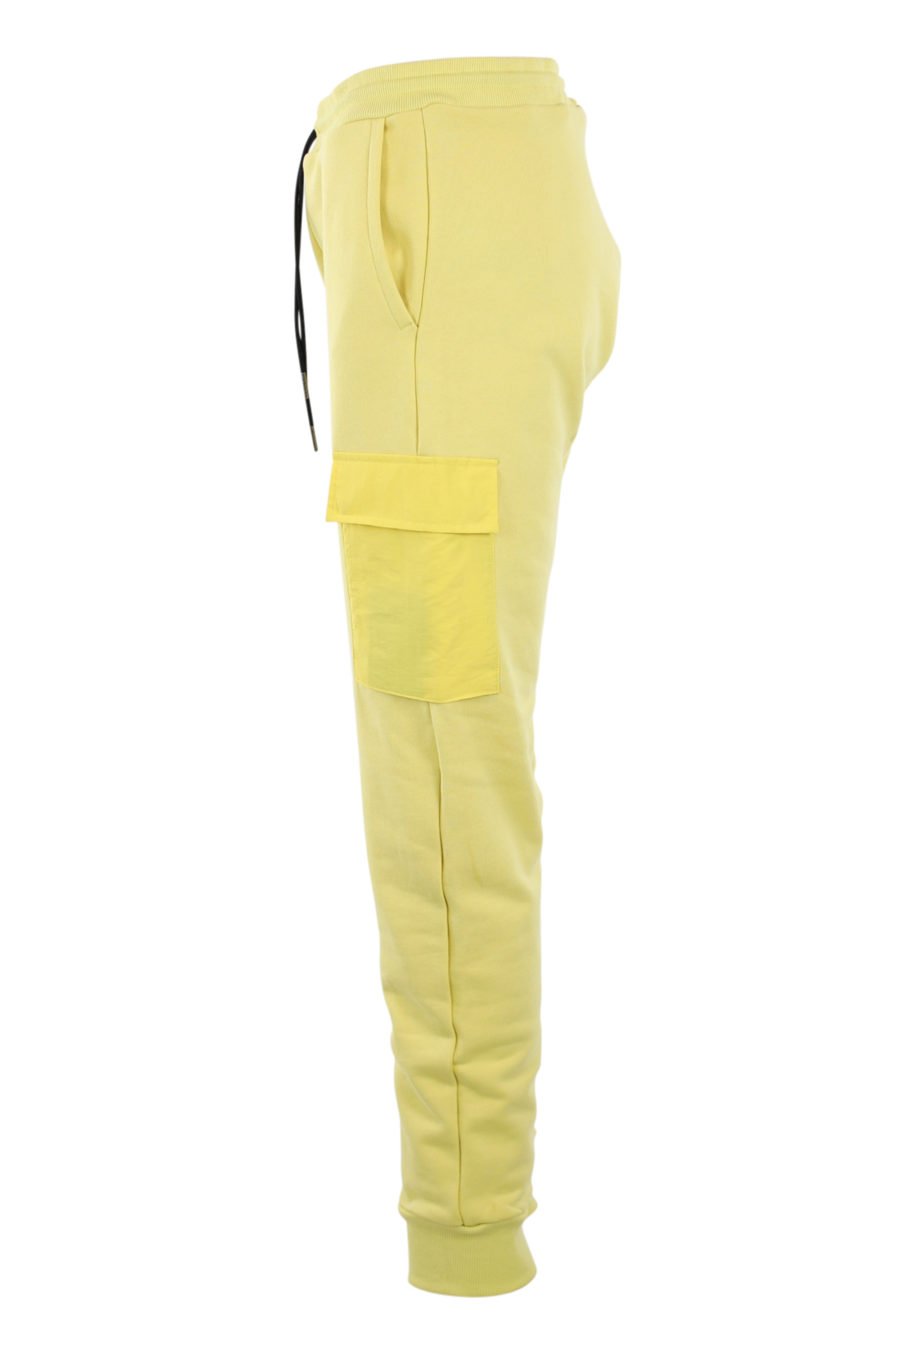 Gelbe Trainingshose mit Taschen - IMG 0909